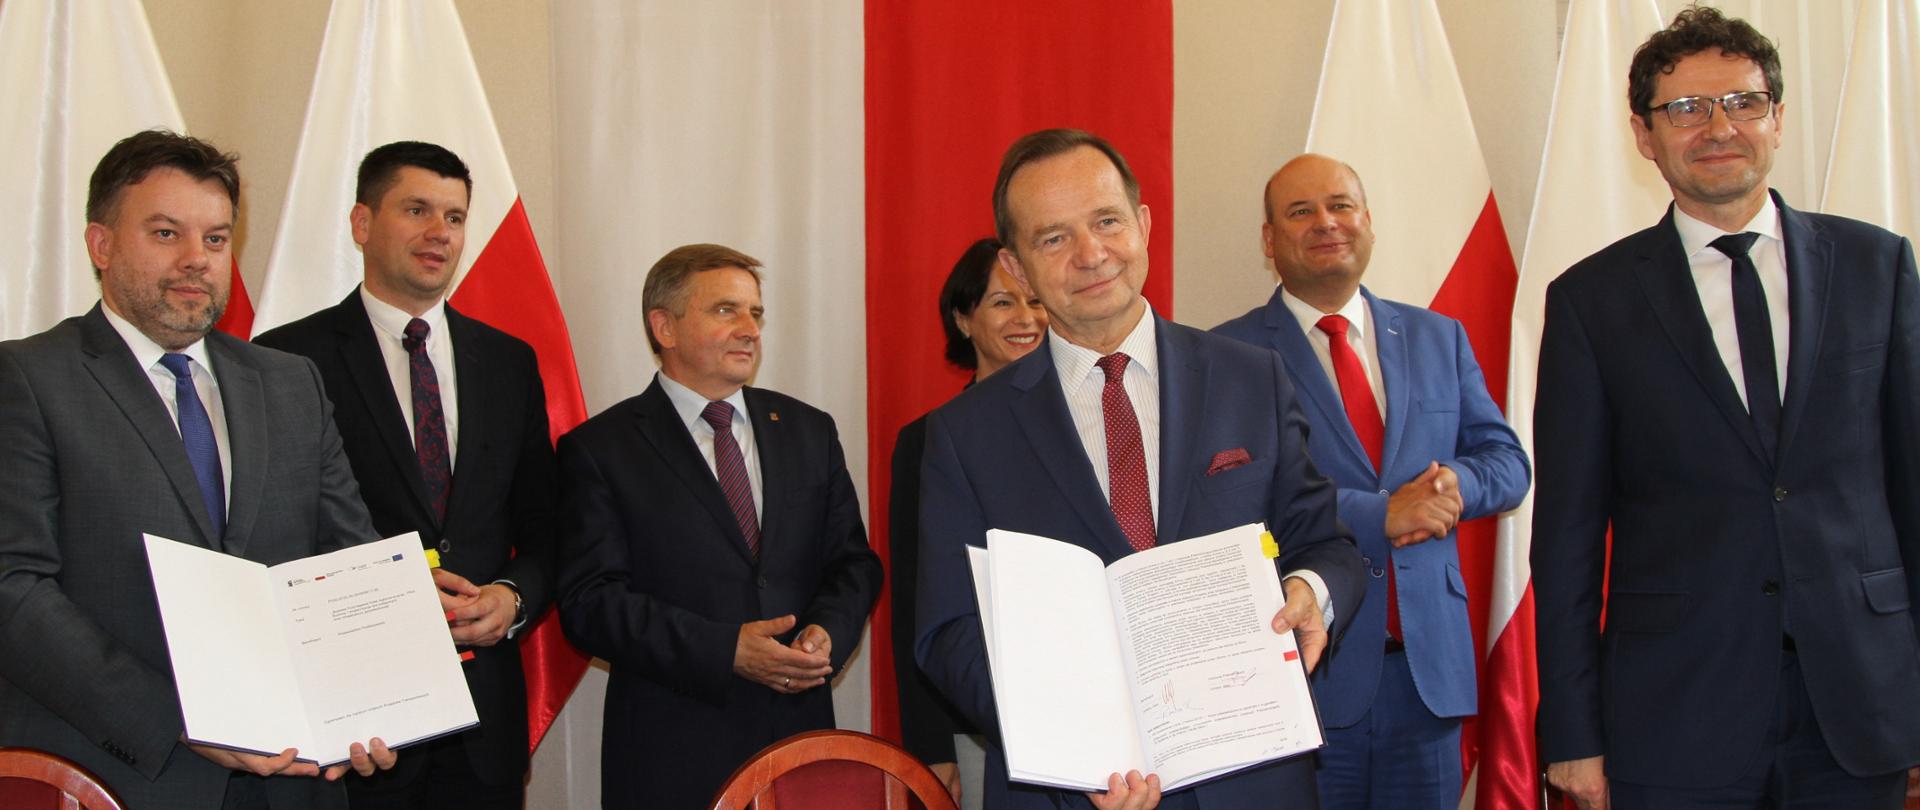 Podpisanie umowy na dofinansowanie Podmiejskiej Kolei Aglomeracyjnej w Rzeszowie